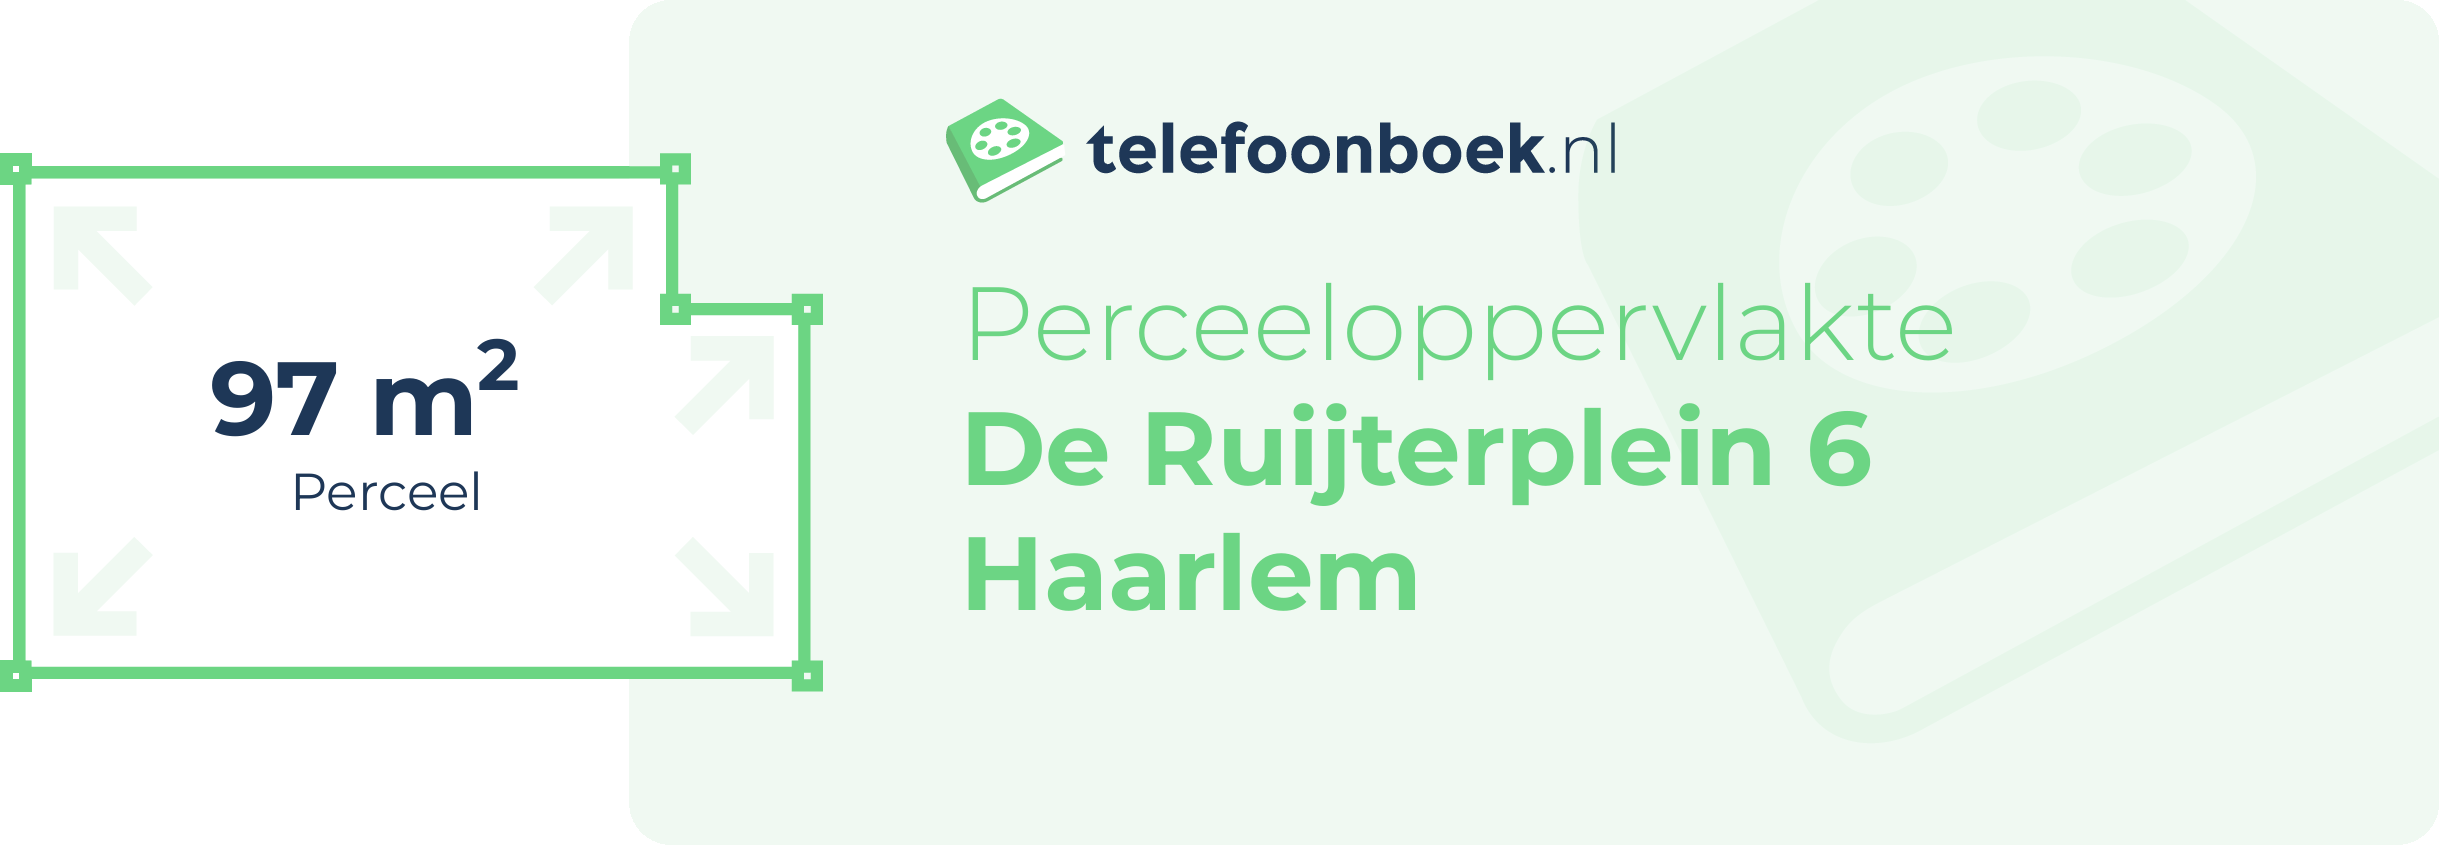 Perceeloppervlakte De Ruijterplein 6 Haarlem